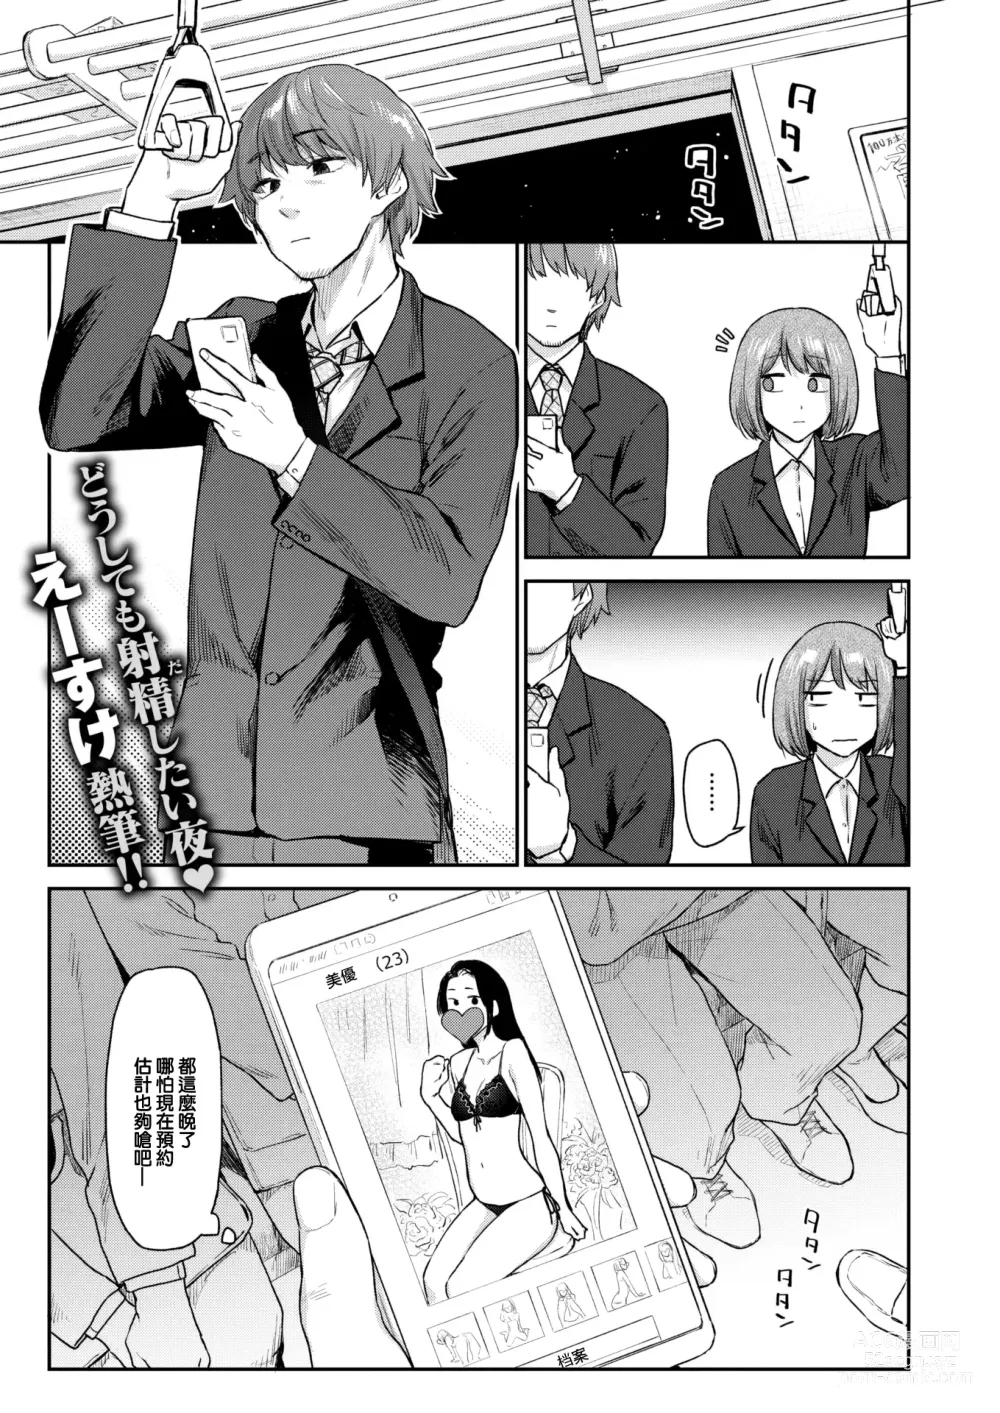 Page 2 of manga Okaeri - Im waiting for you....